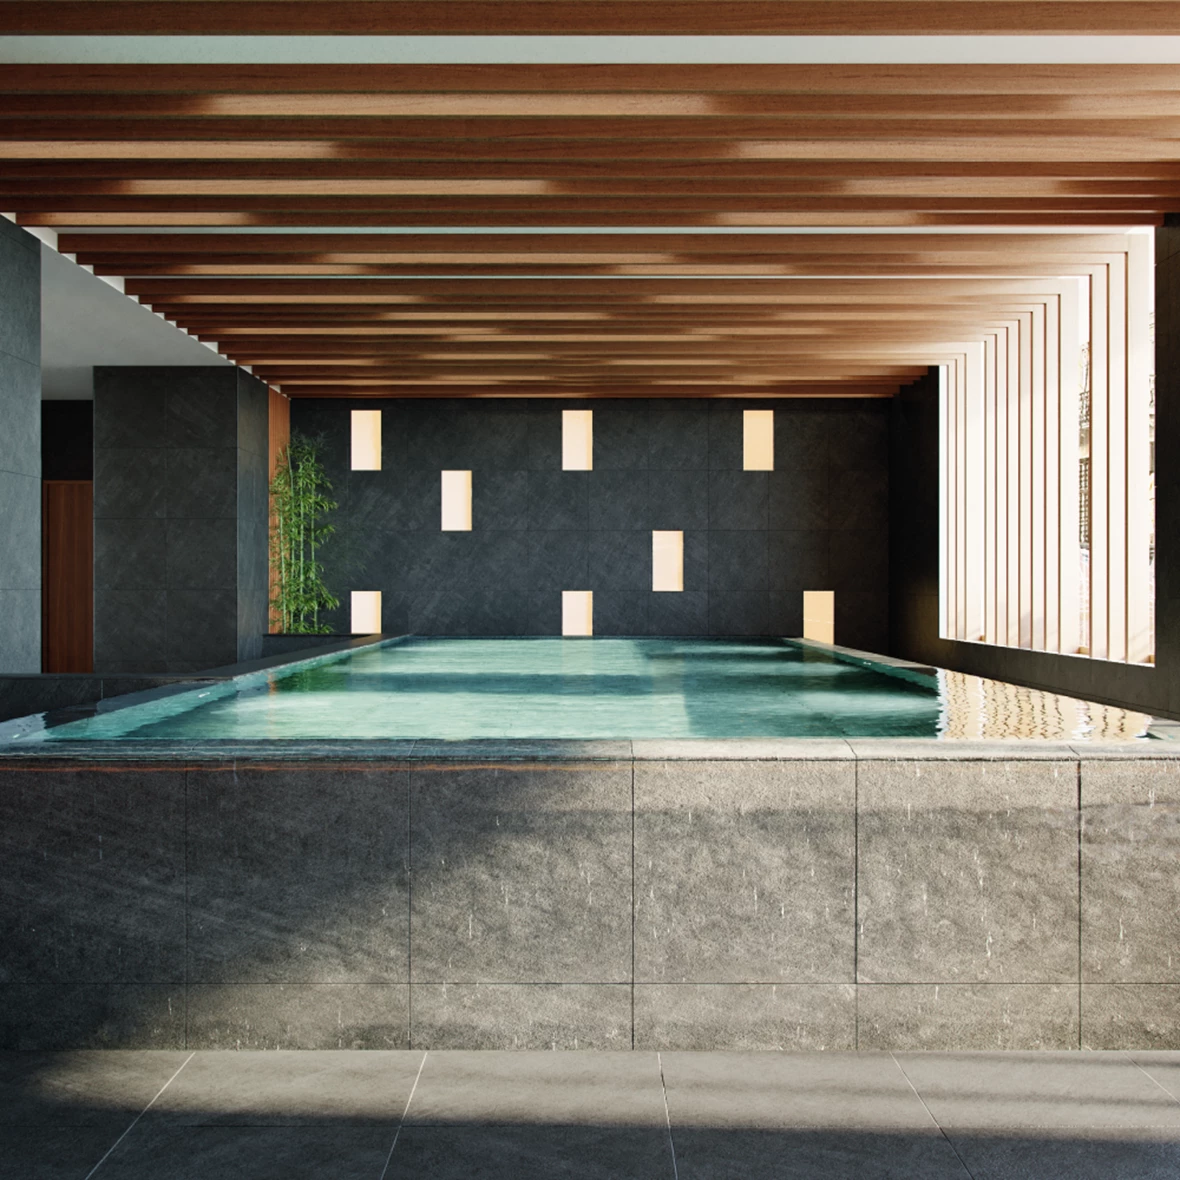 Indoor Swimming Pool - CGI produced by MomentumViz Studio